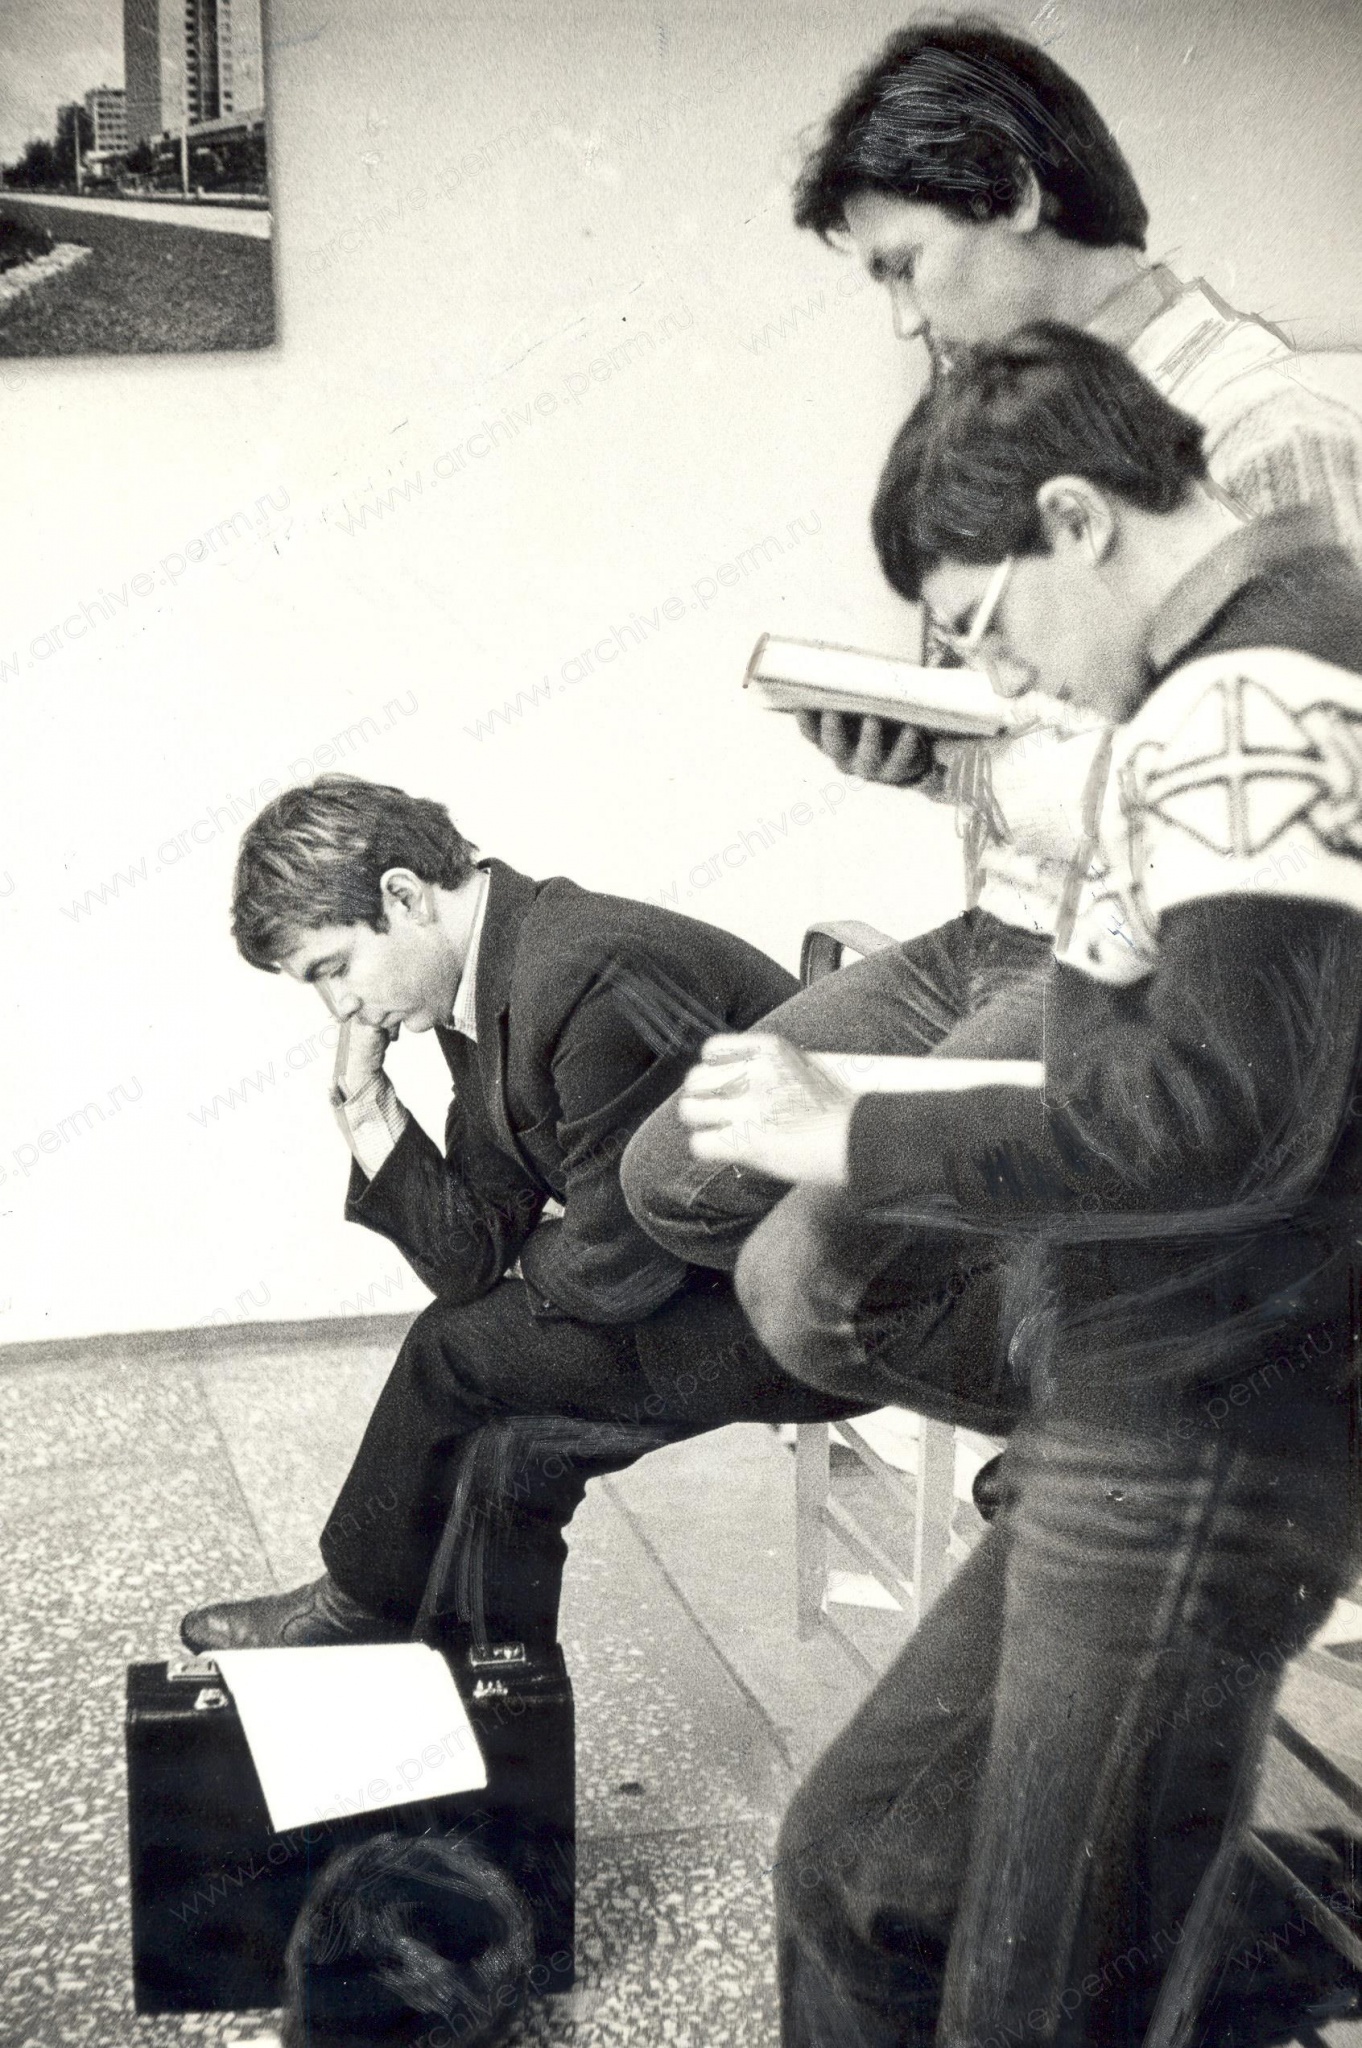 ФФ.Оп.6п.Д.0741. Студенты ППИ перед экзаменом во время сессии. 1983. Пермь.jpg